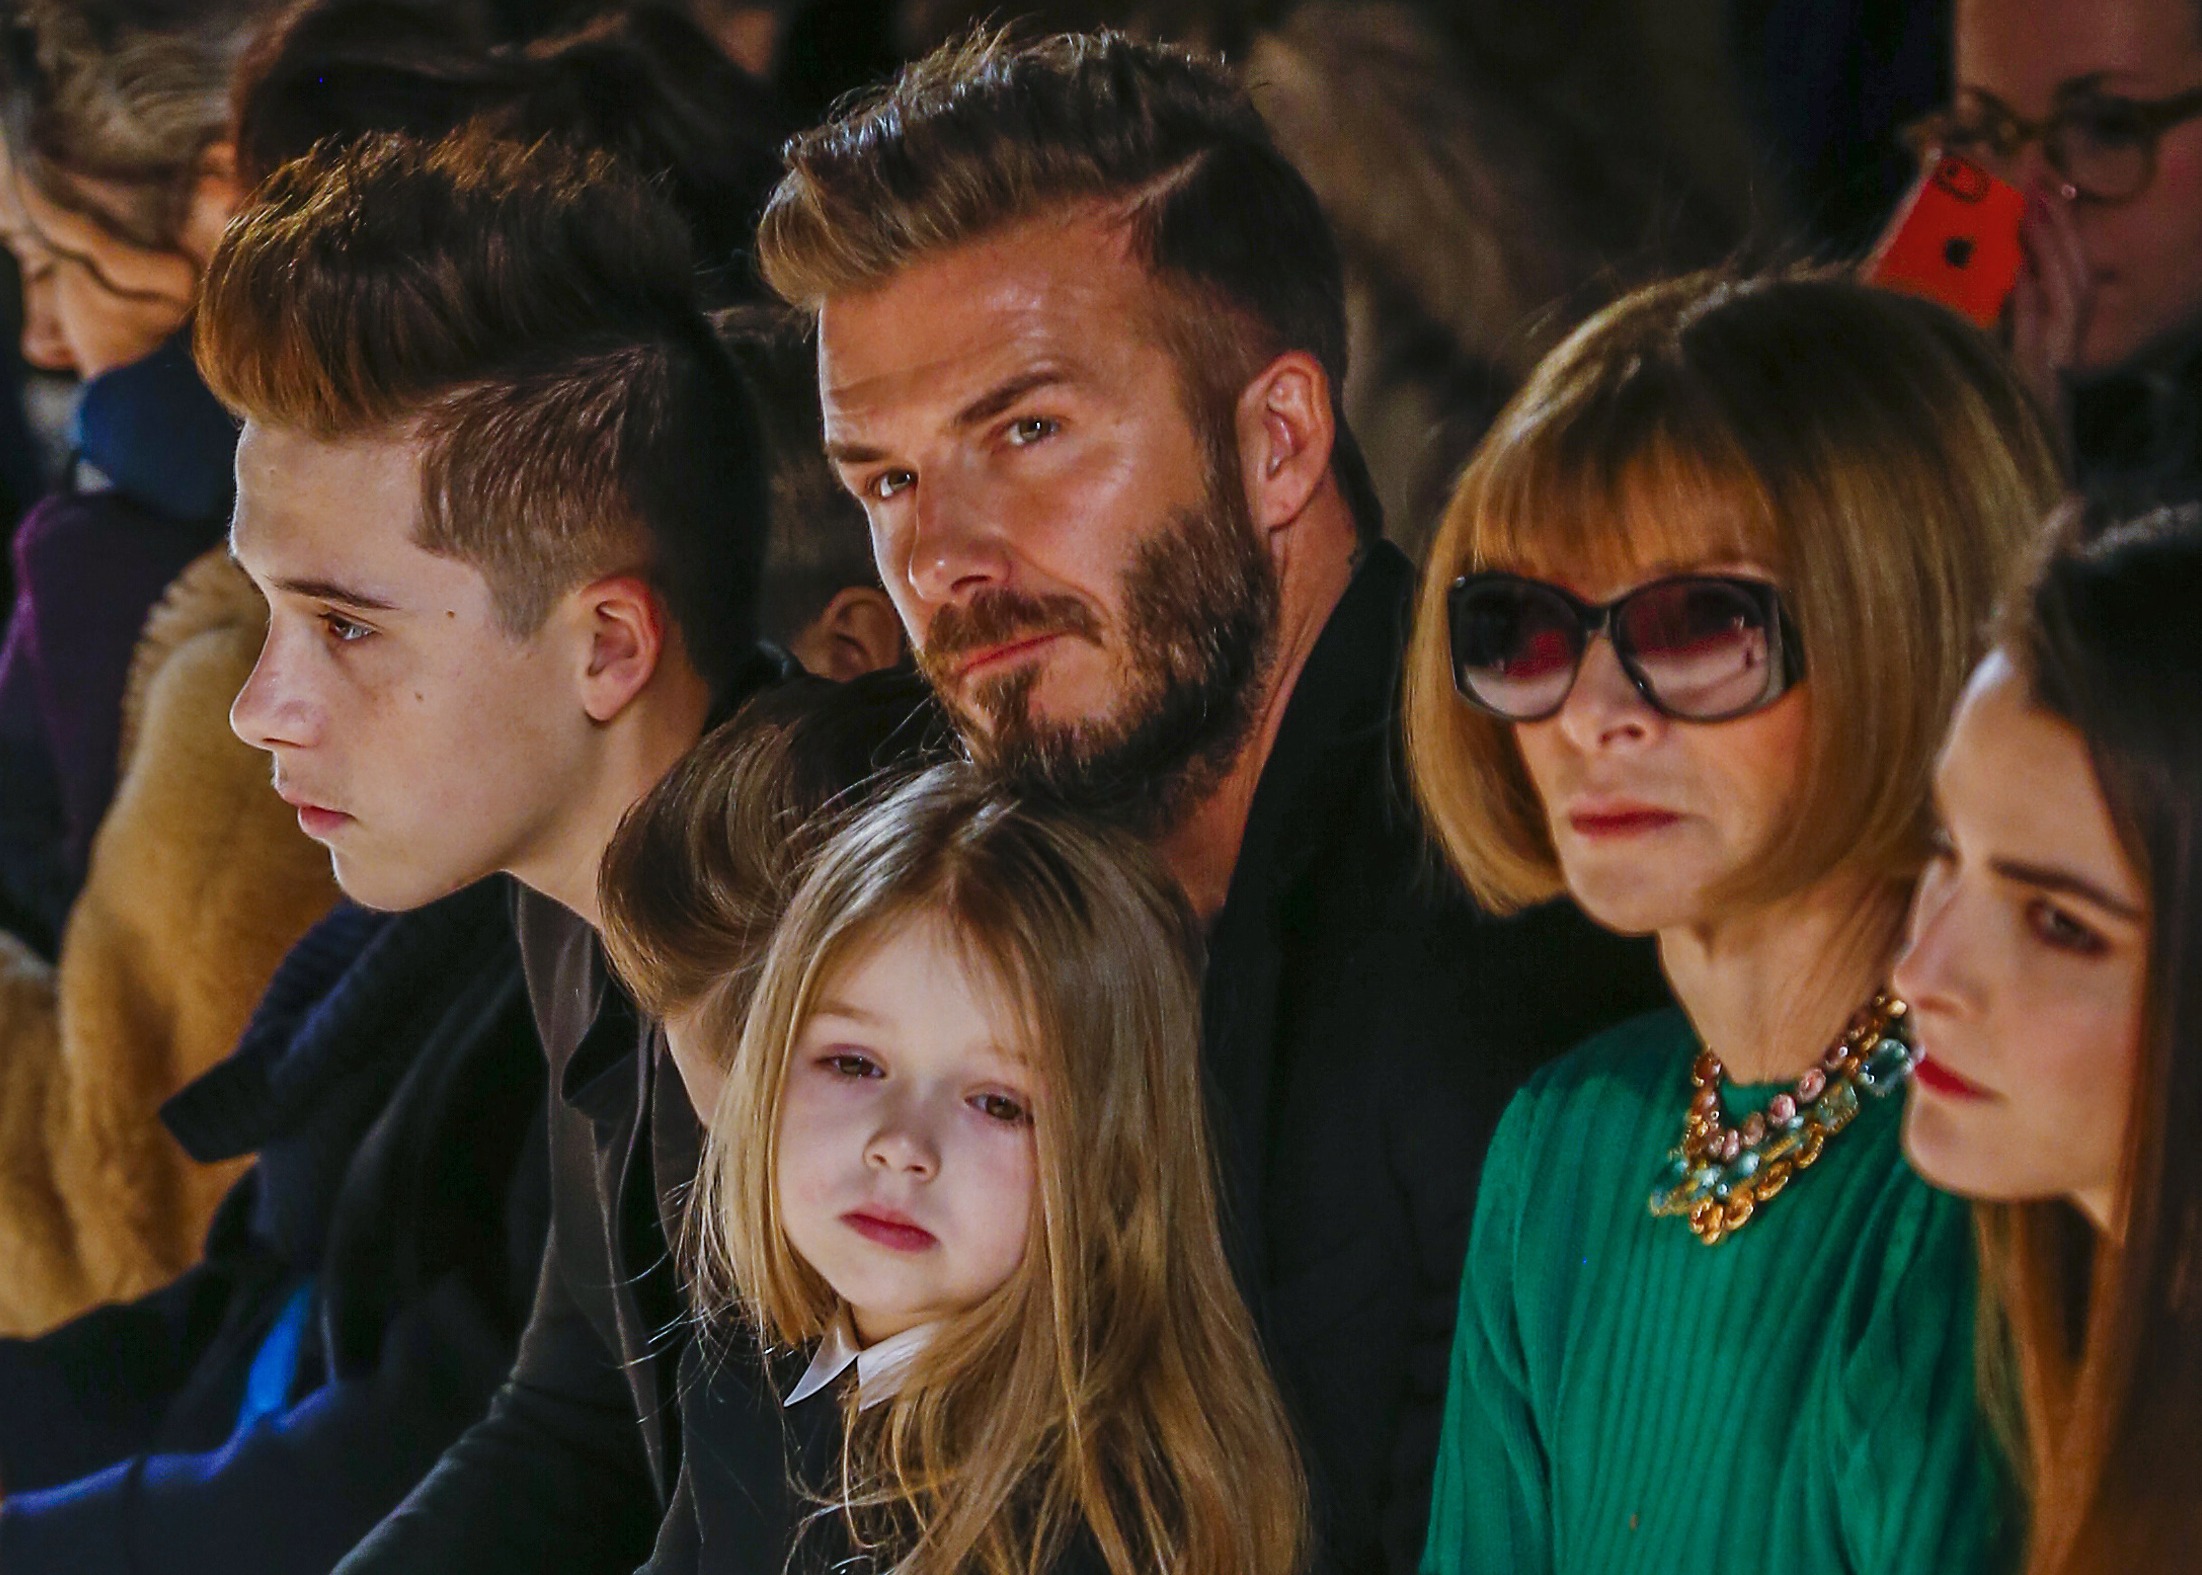 Una foto de los Beckham le valió a la pequeña del clan un sinfín de burlas